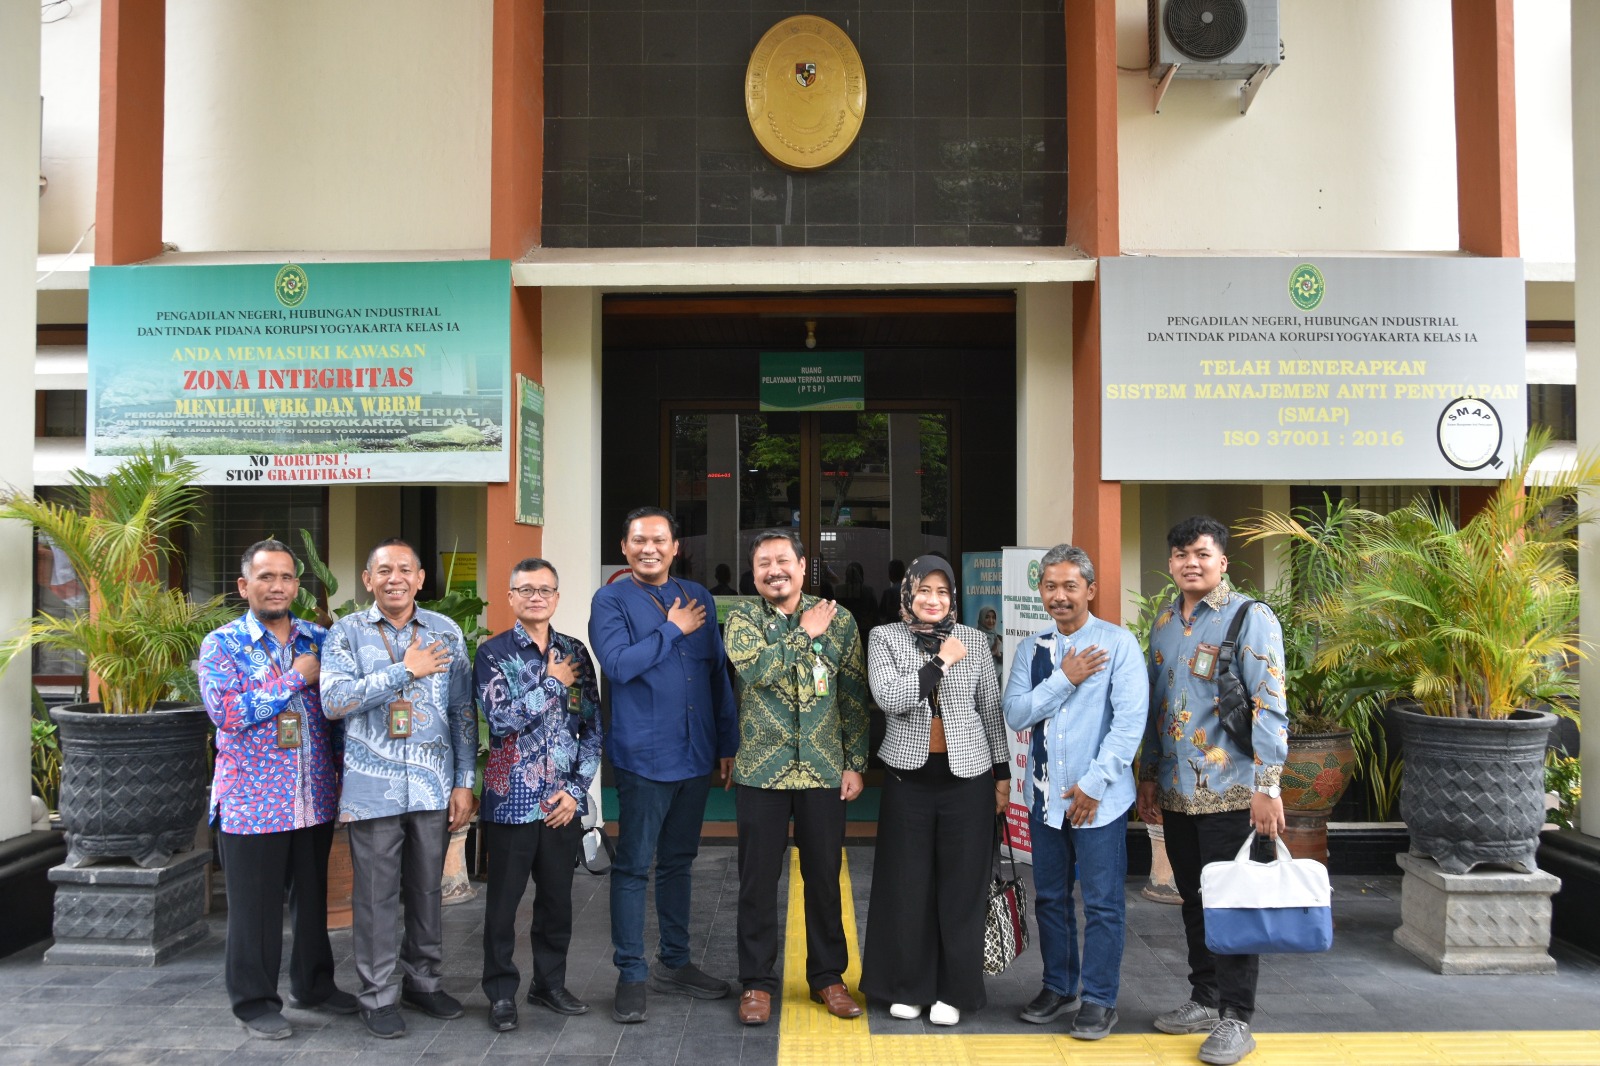 Pengadilan Negeri Yogyakarta Mendapatkan Audiensi, Wawancara dan Pengumpulan Data oleh Badan Litbang Diklat Hukum dan Peradilan Mahkamah Agung RI